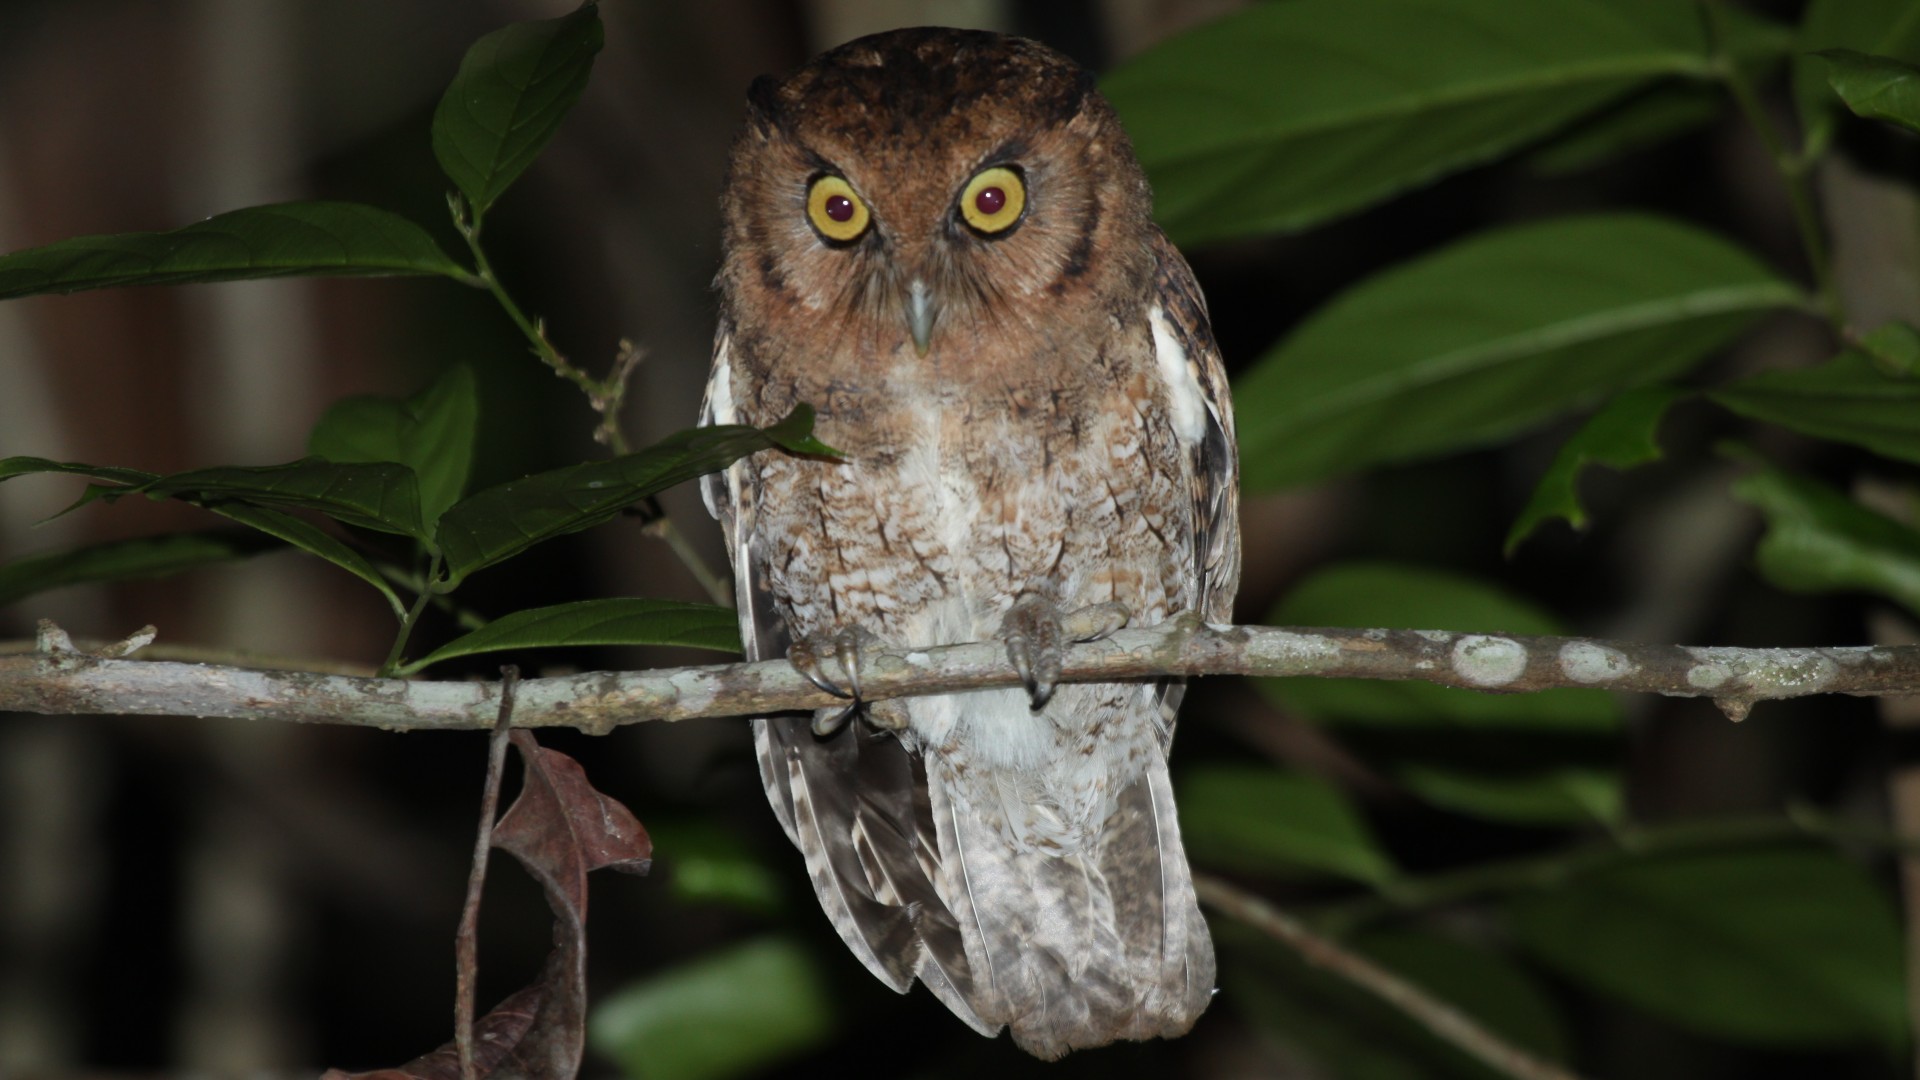 An Alagoas Brazilian screech owl